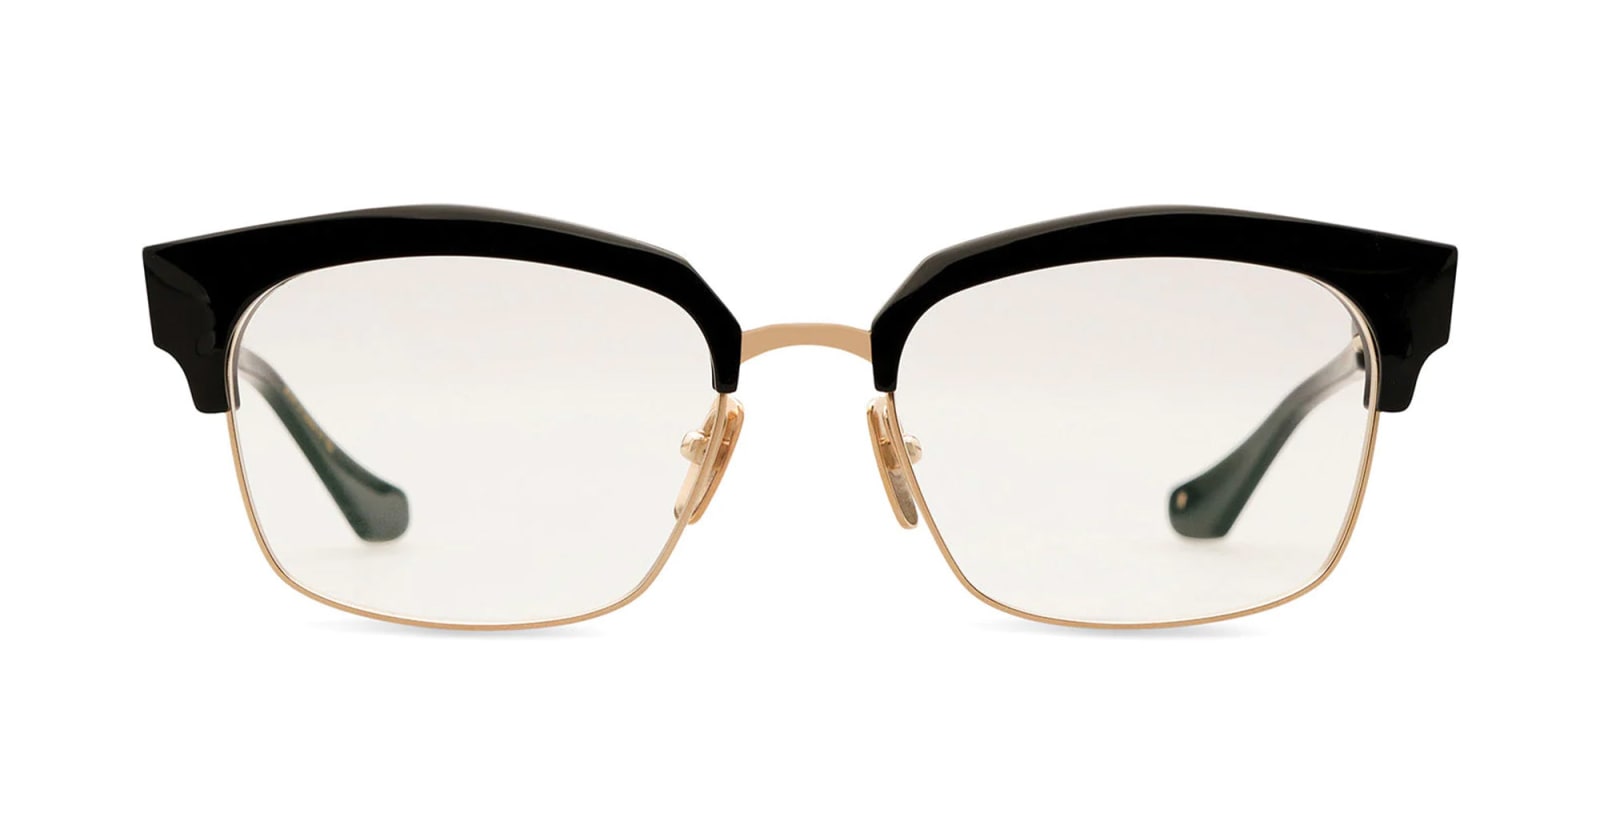 Lotova - White Gold / Black Glasses